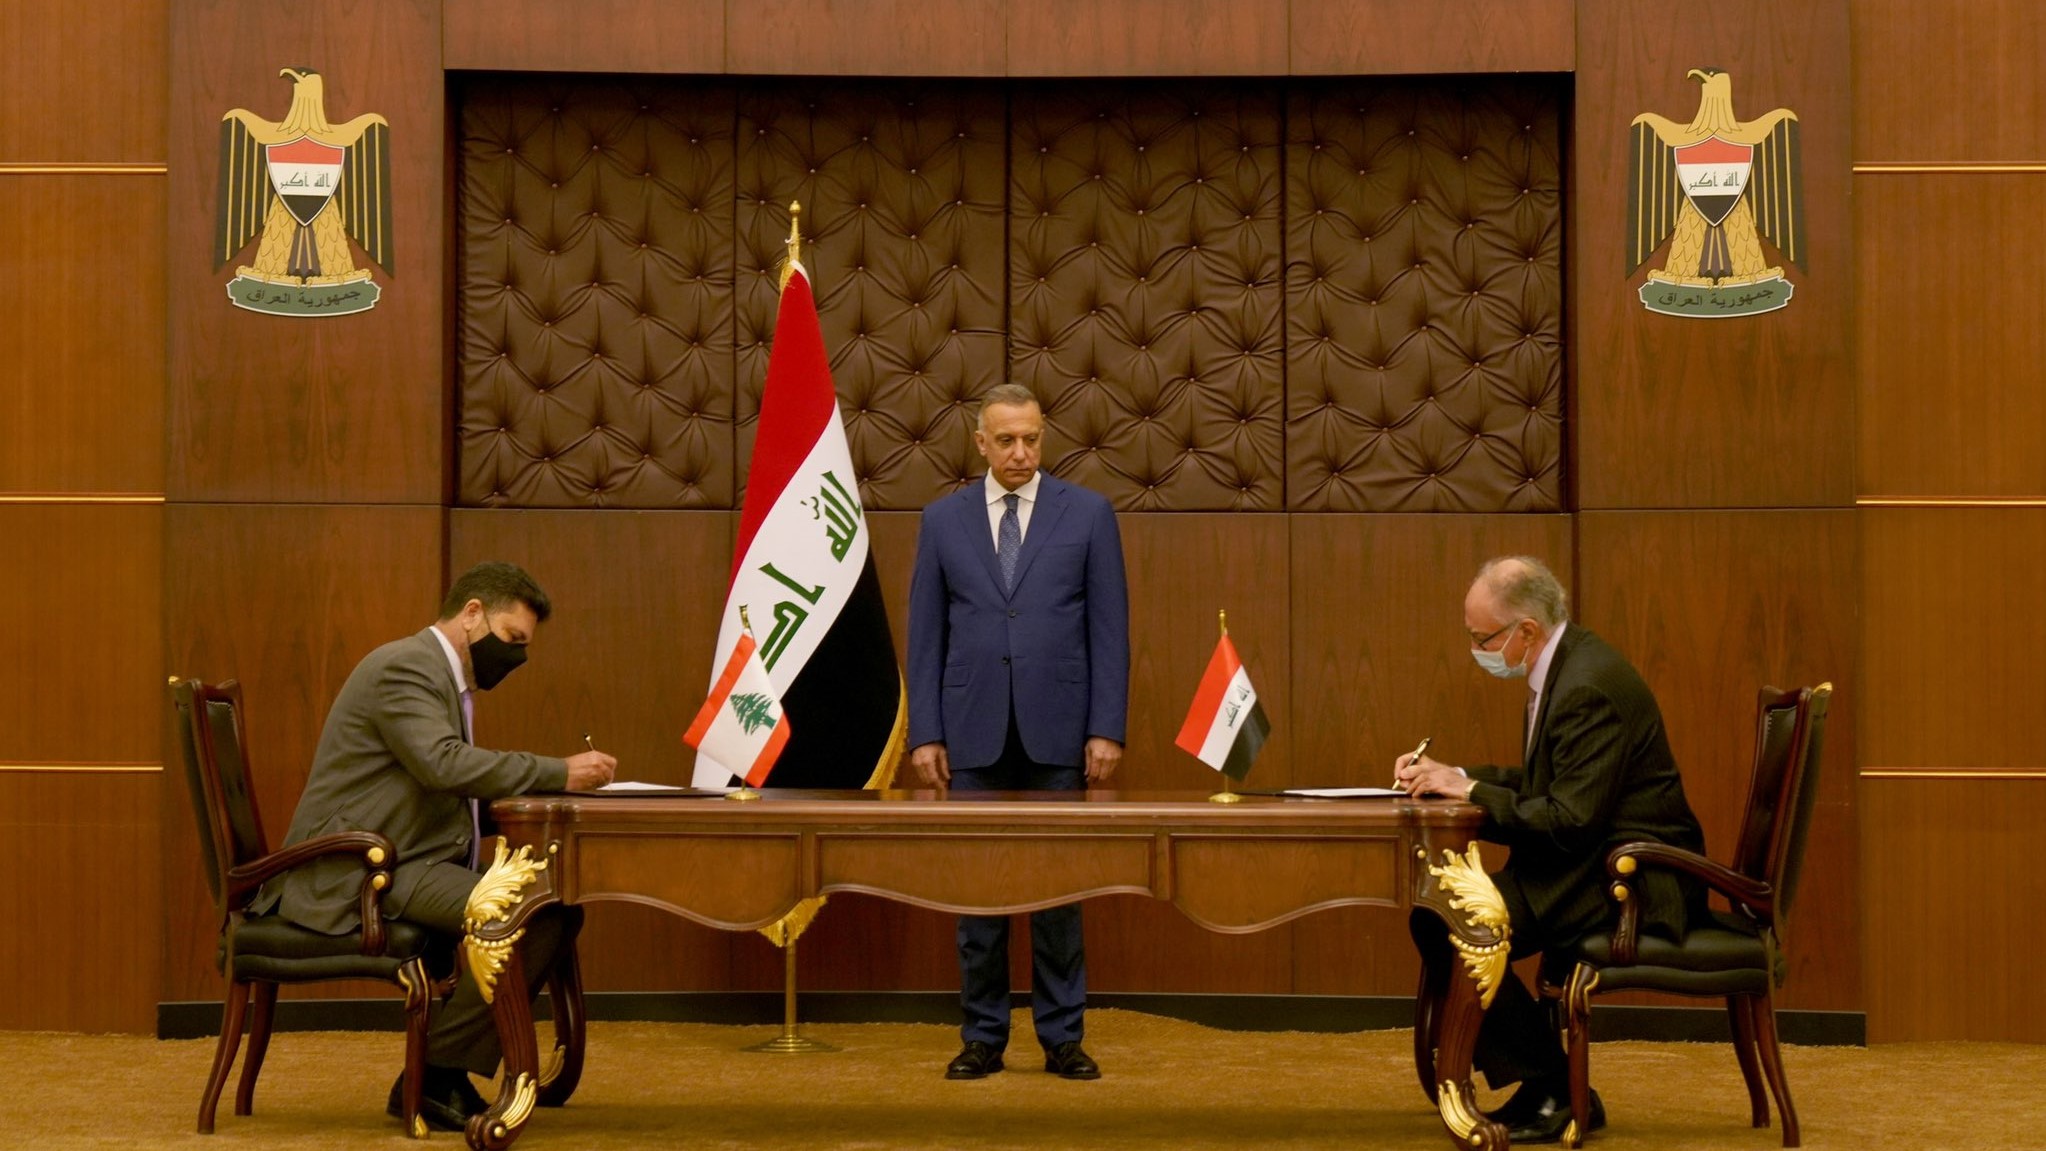 رئيس مجلس الوزراء العراقي يرعى مراسم توقيع اتفاق مع لبنان في 24 يوليو 2021 لبيع مليون طن من مادة زيت الوقود الثقيل بالسعر العالمي، على ان يكون السداد بالخدمات والسلع